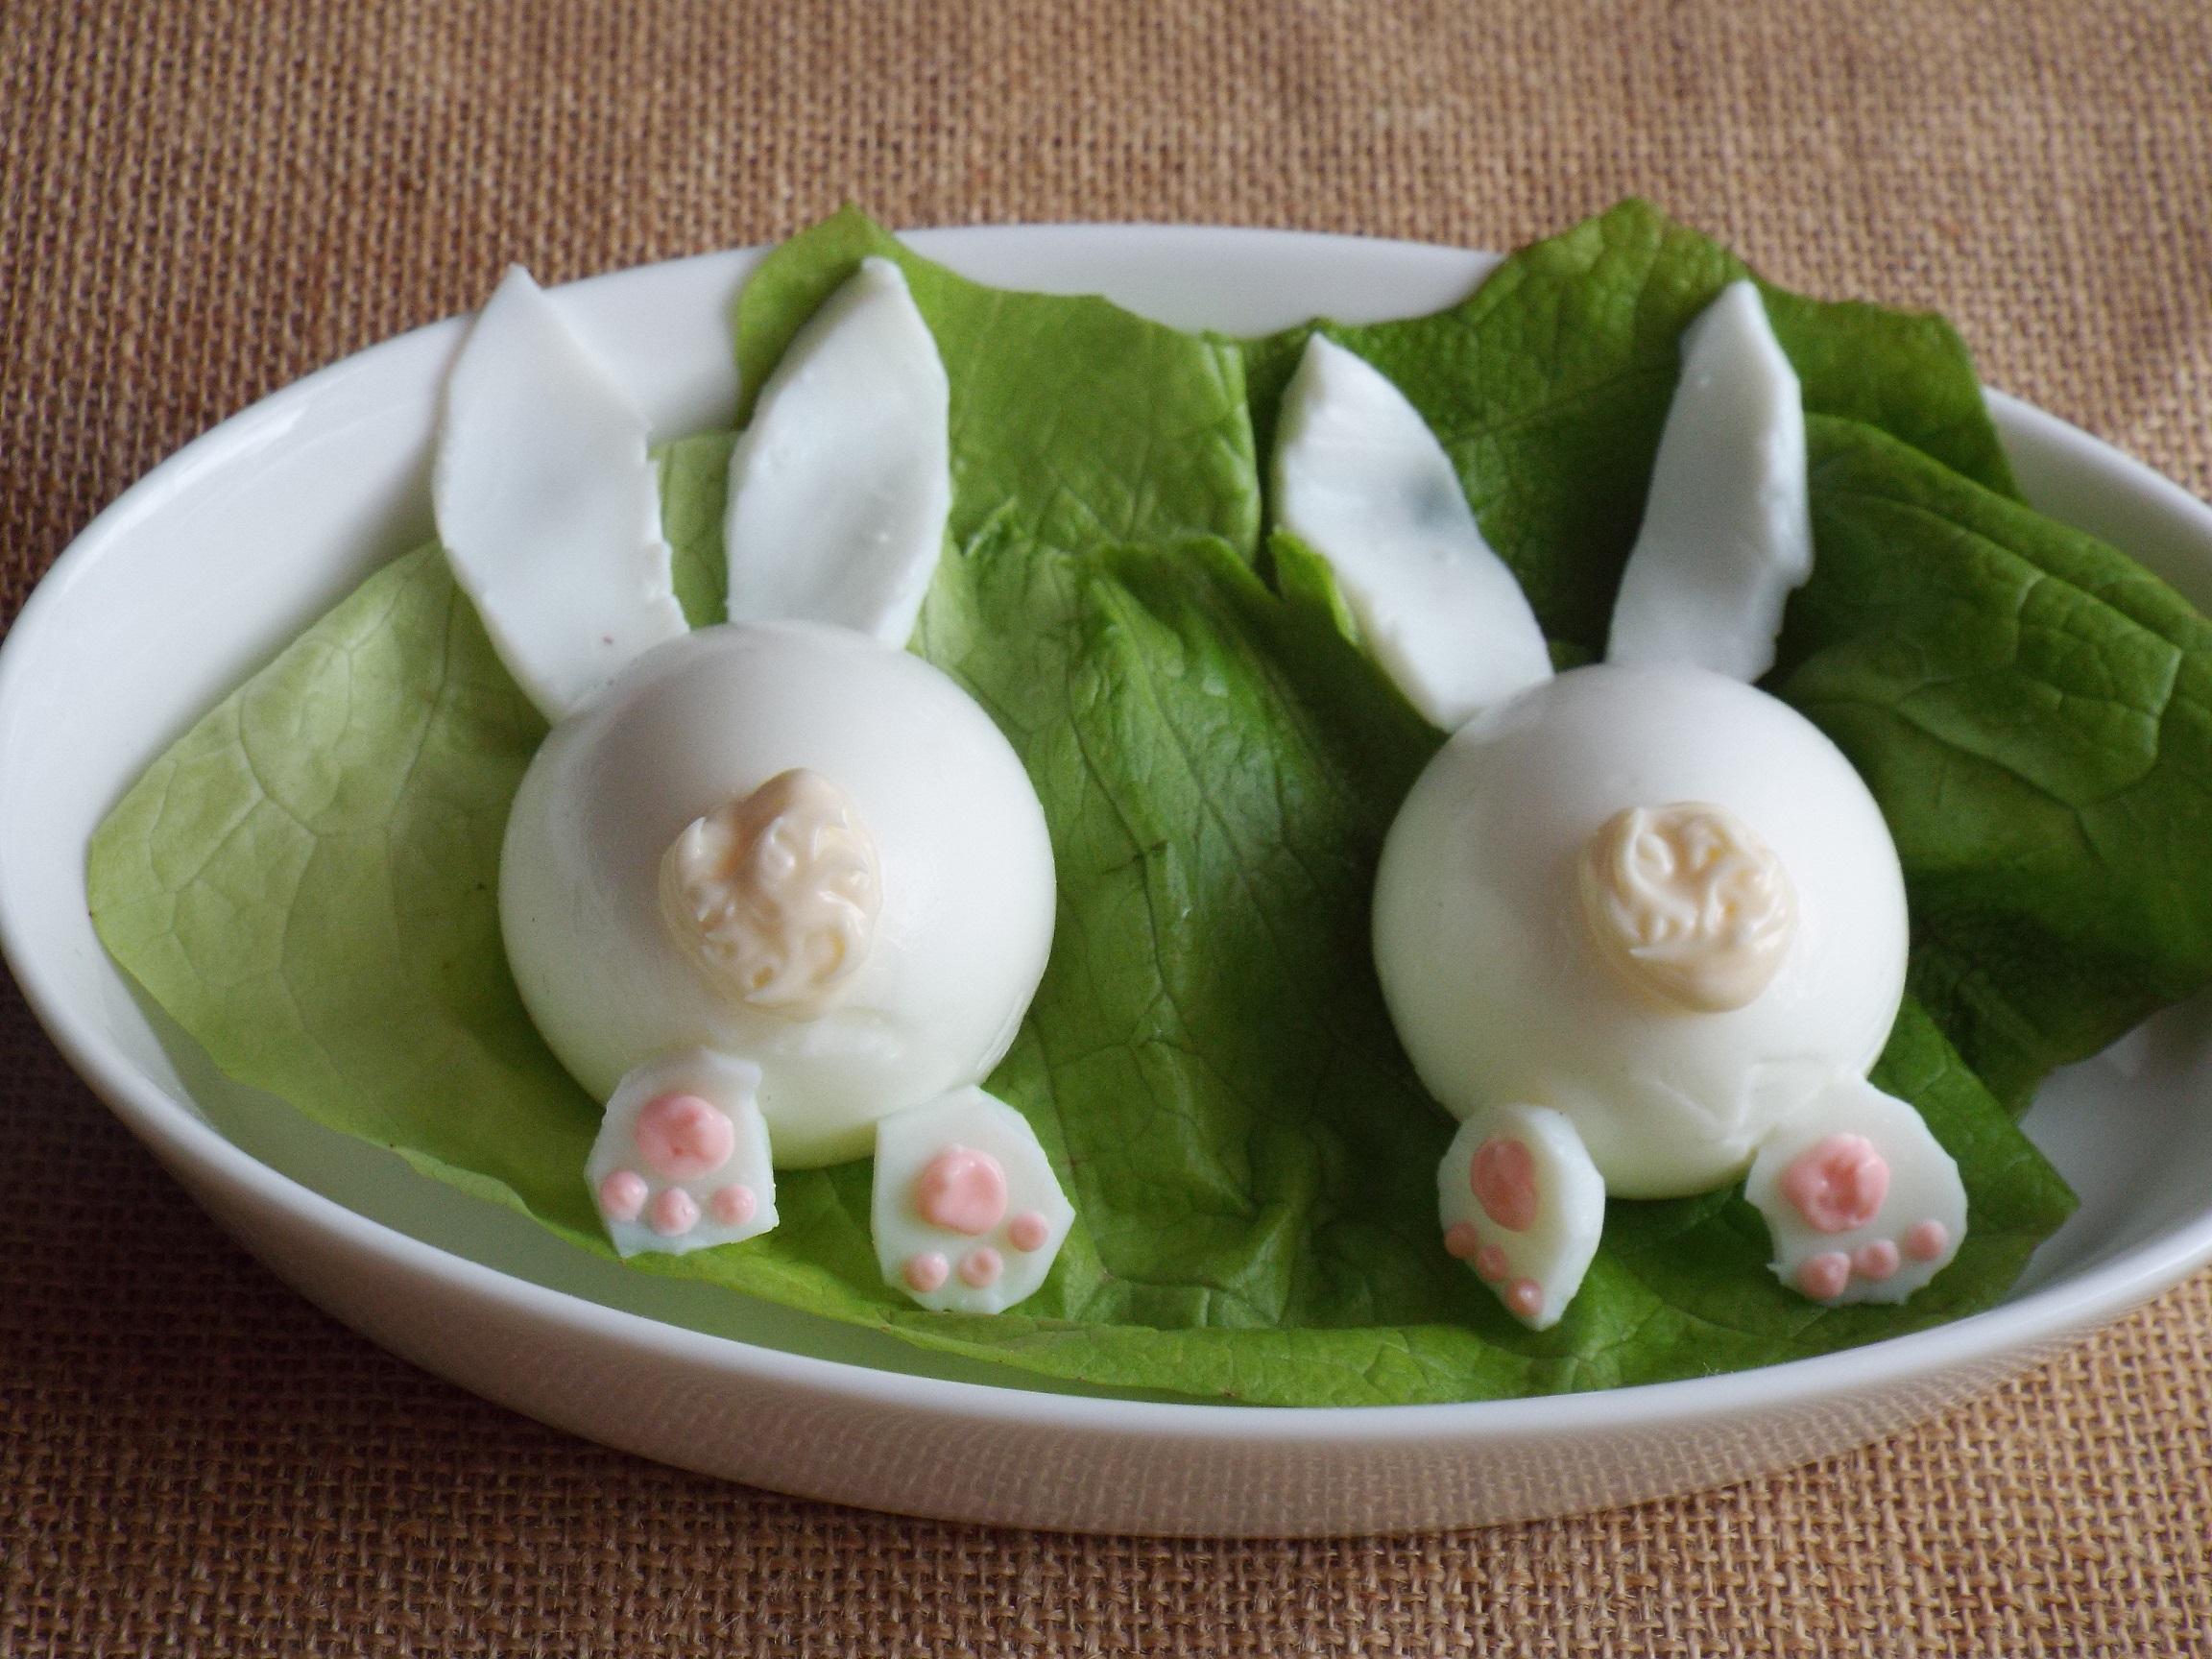 Jajeczne ozdoby na Wielkanocny stół